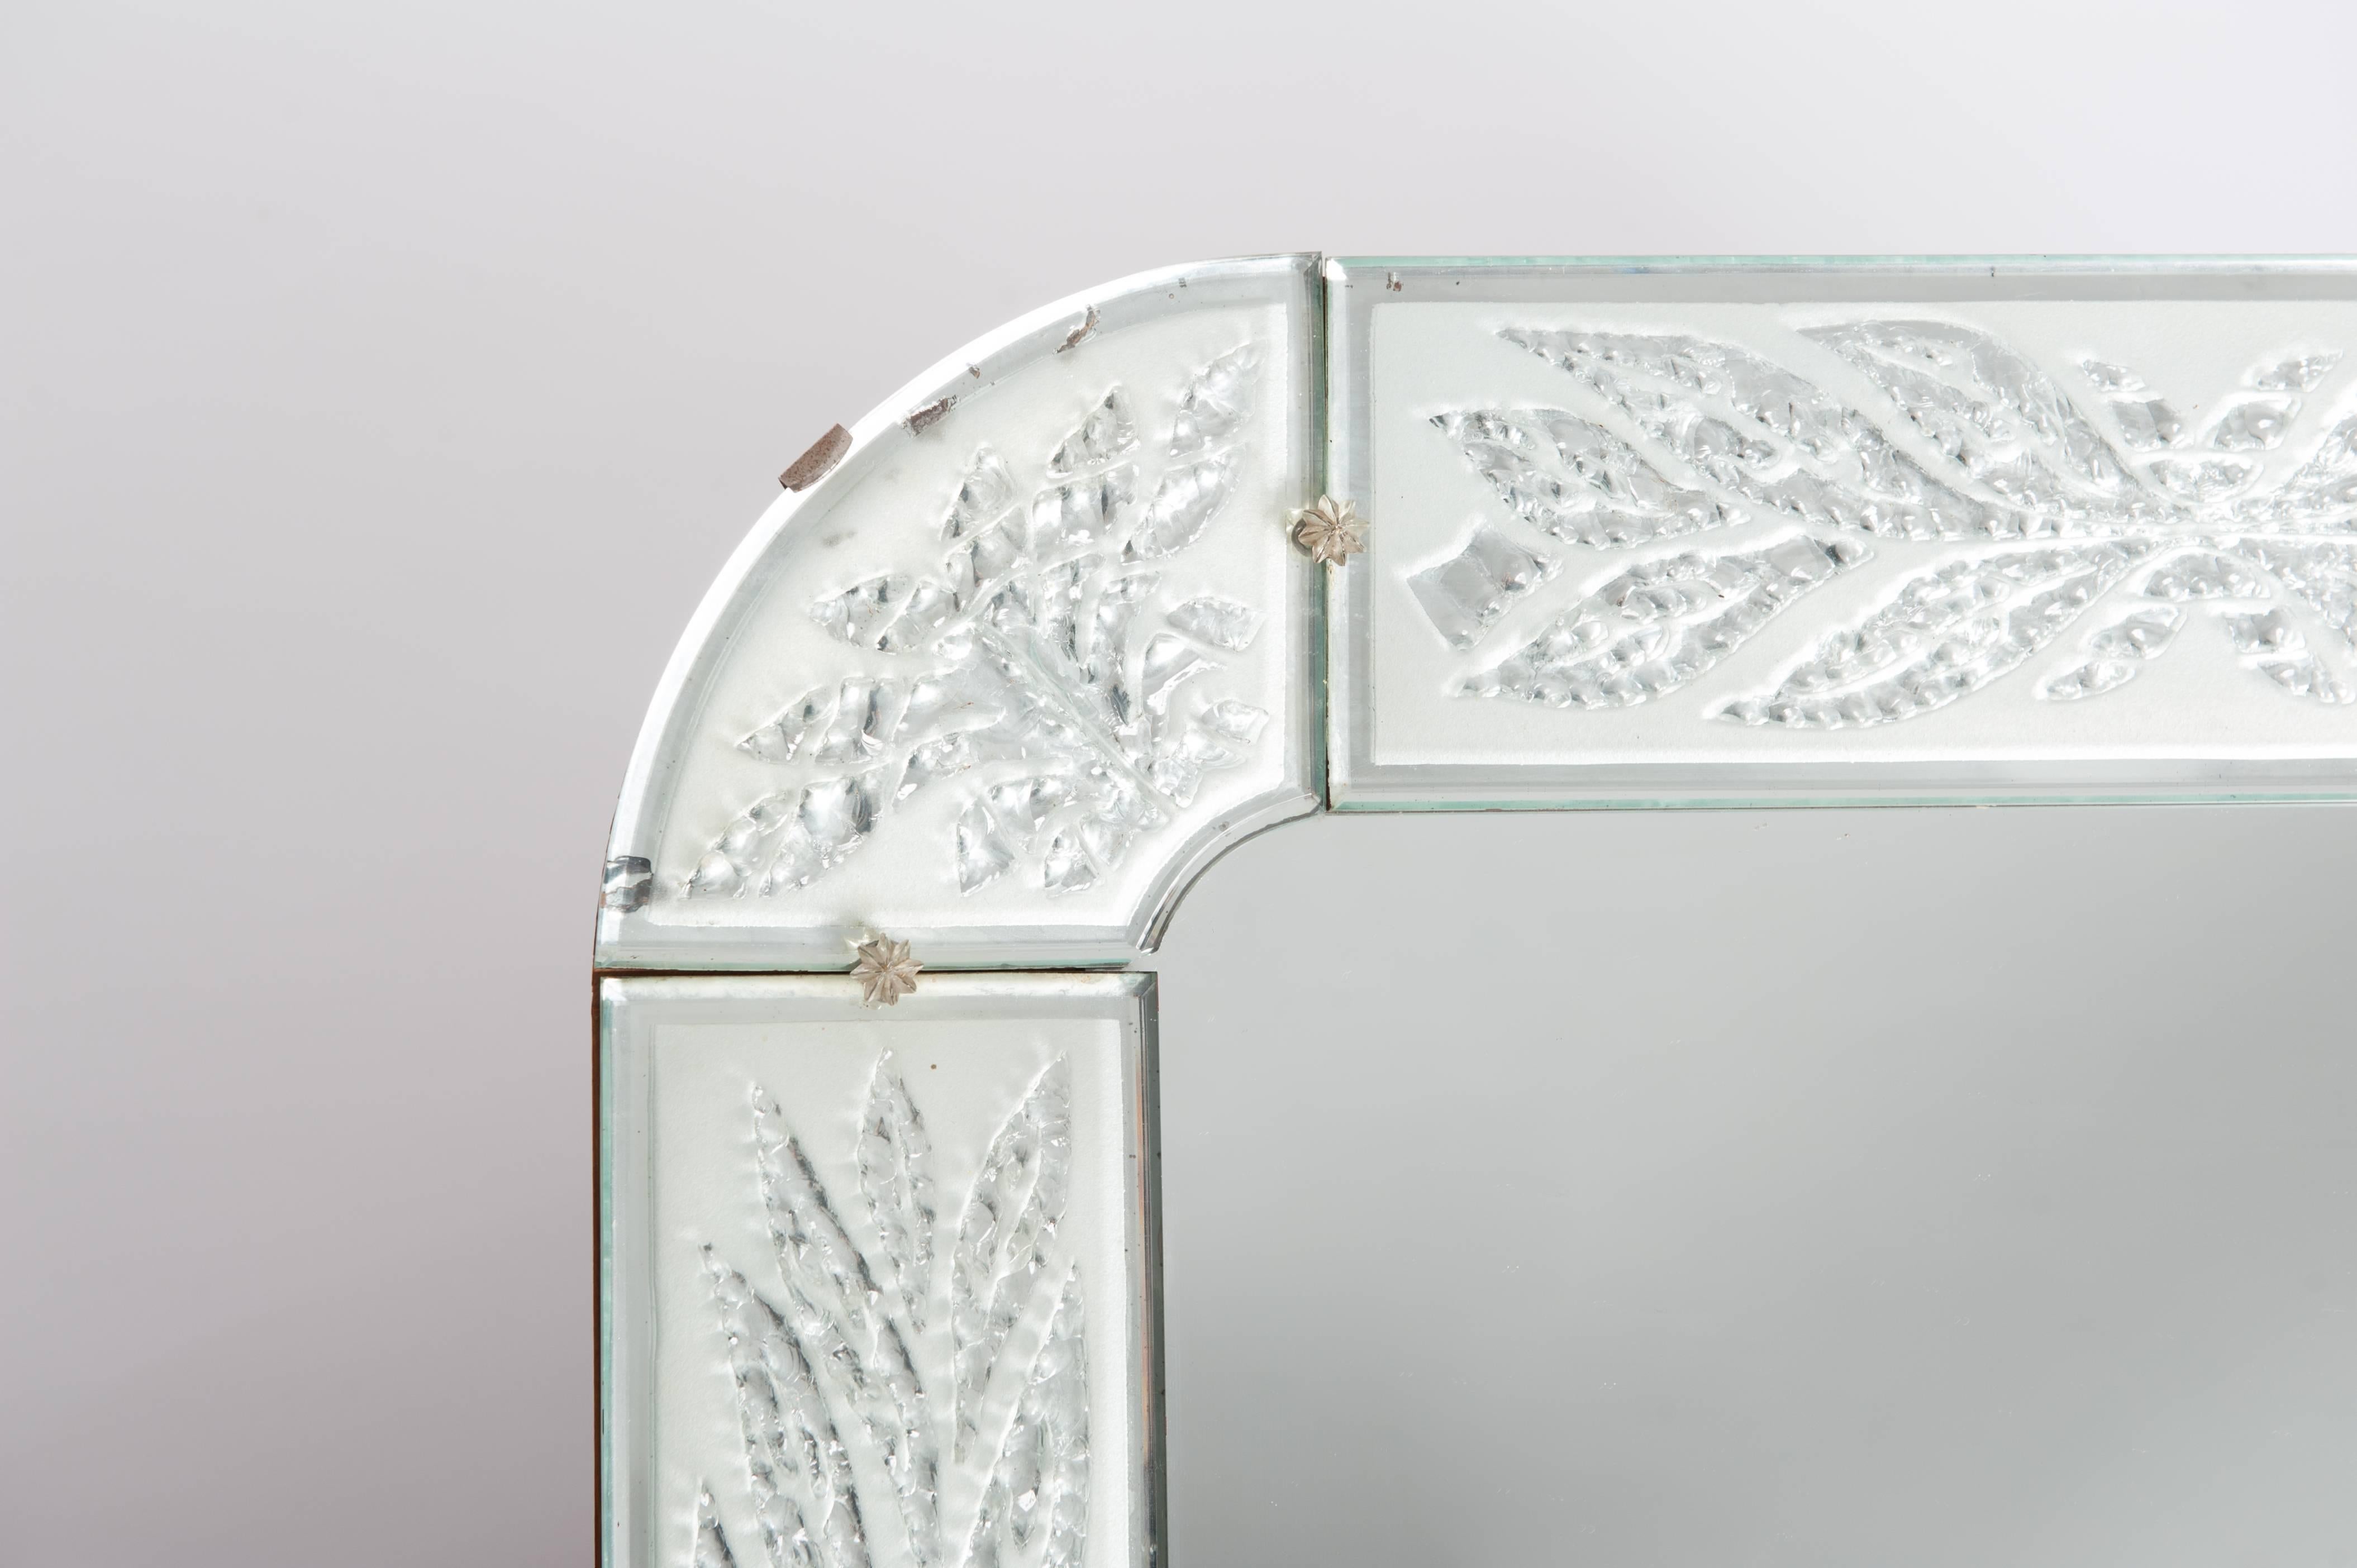 Miroir Art Déco Scandinave particulier, la gravure du cadre ressemble à ceci
les feuilles gelées et les bords de chaque pièce présentent de minuscules biseaux.
Verre et dos en bois d'origine.